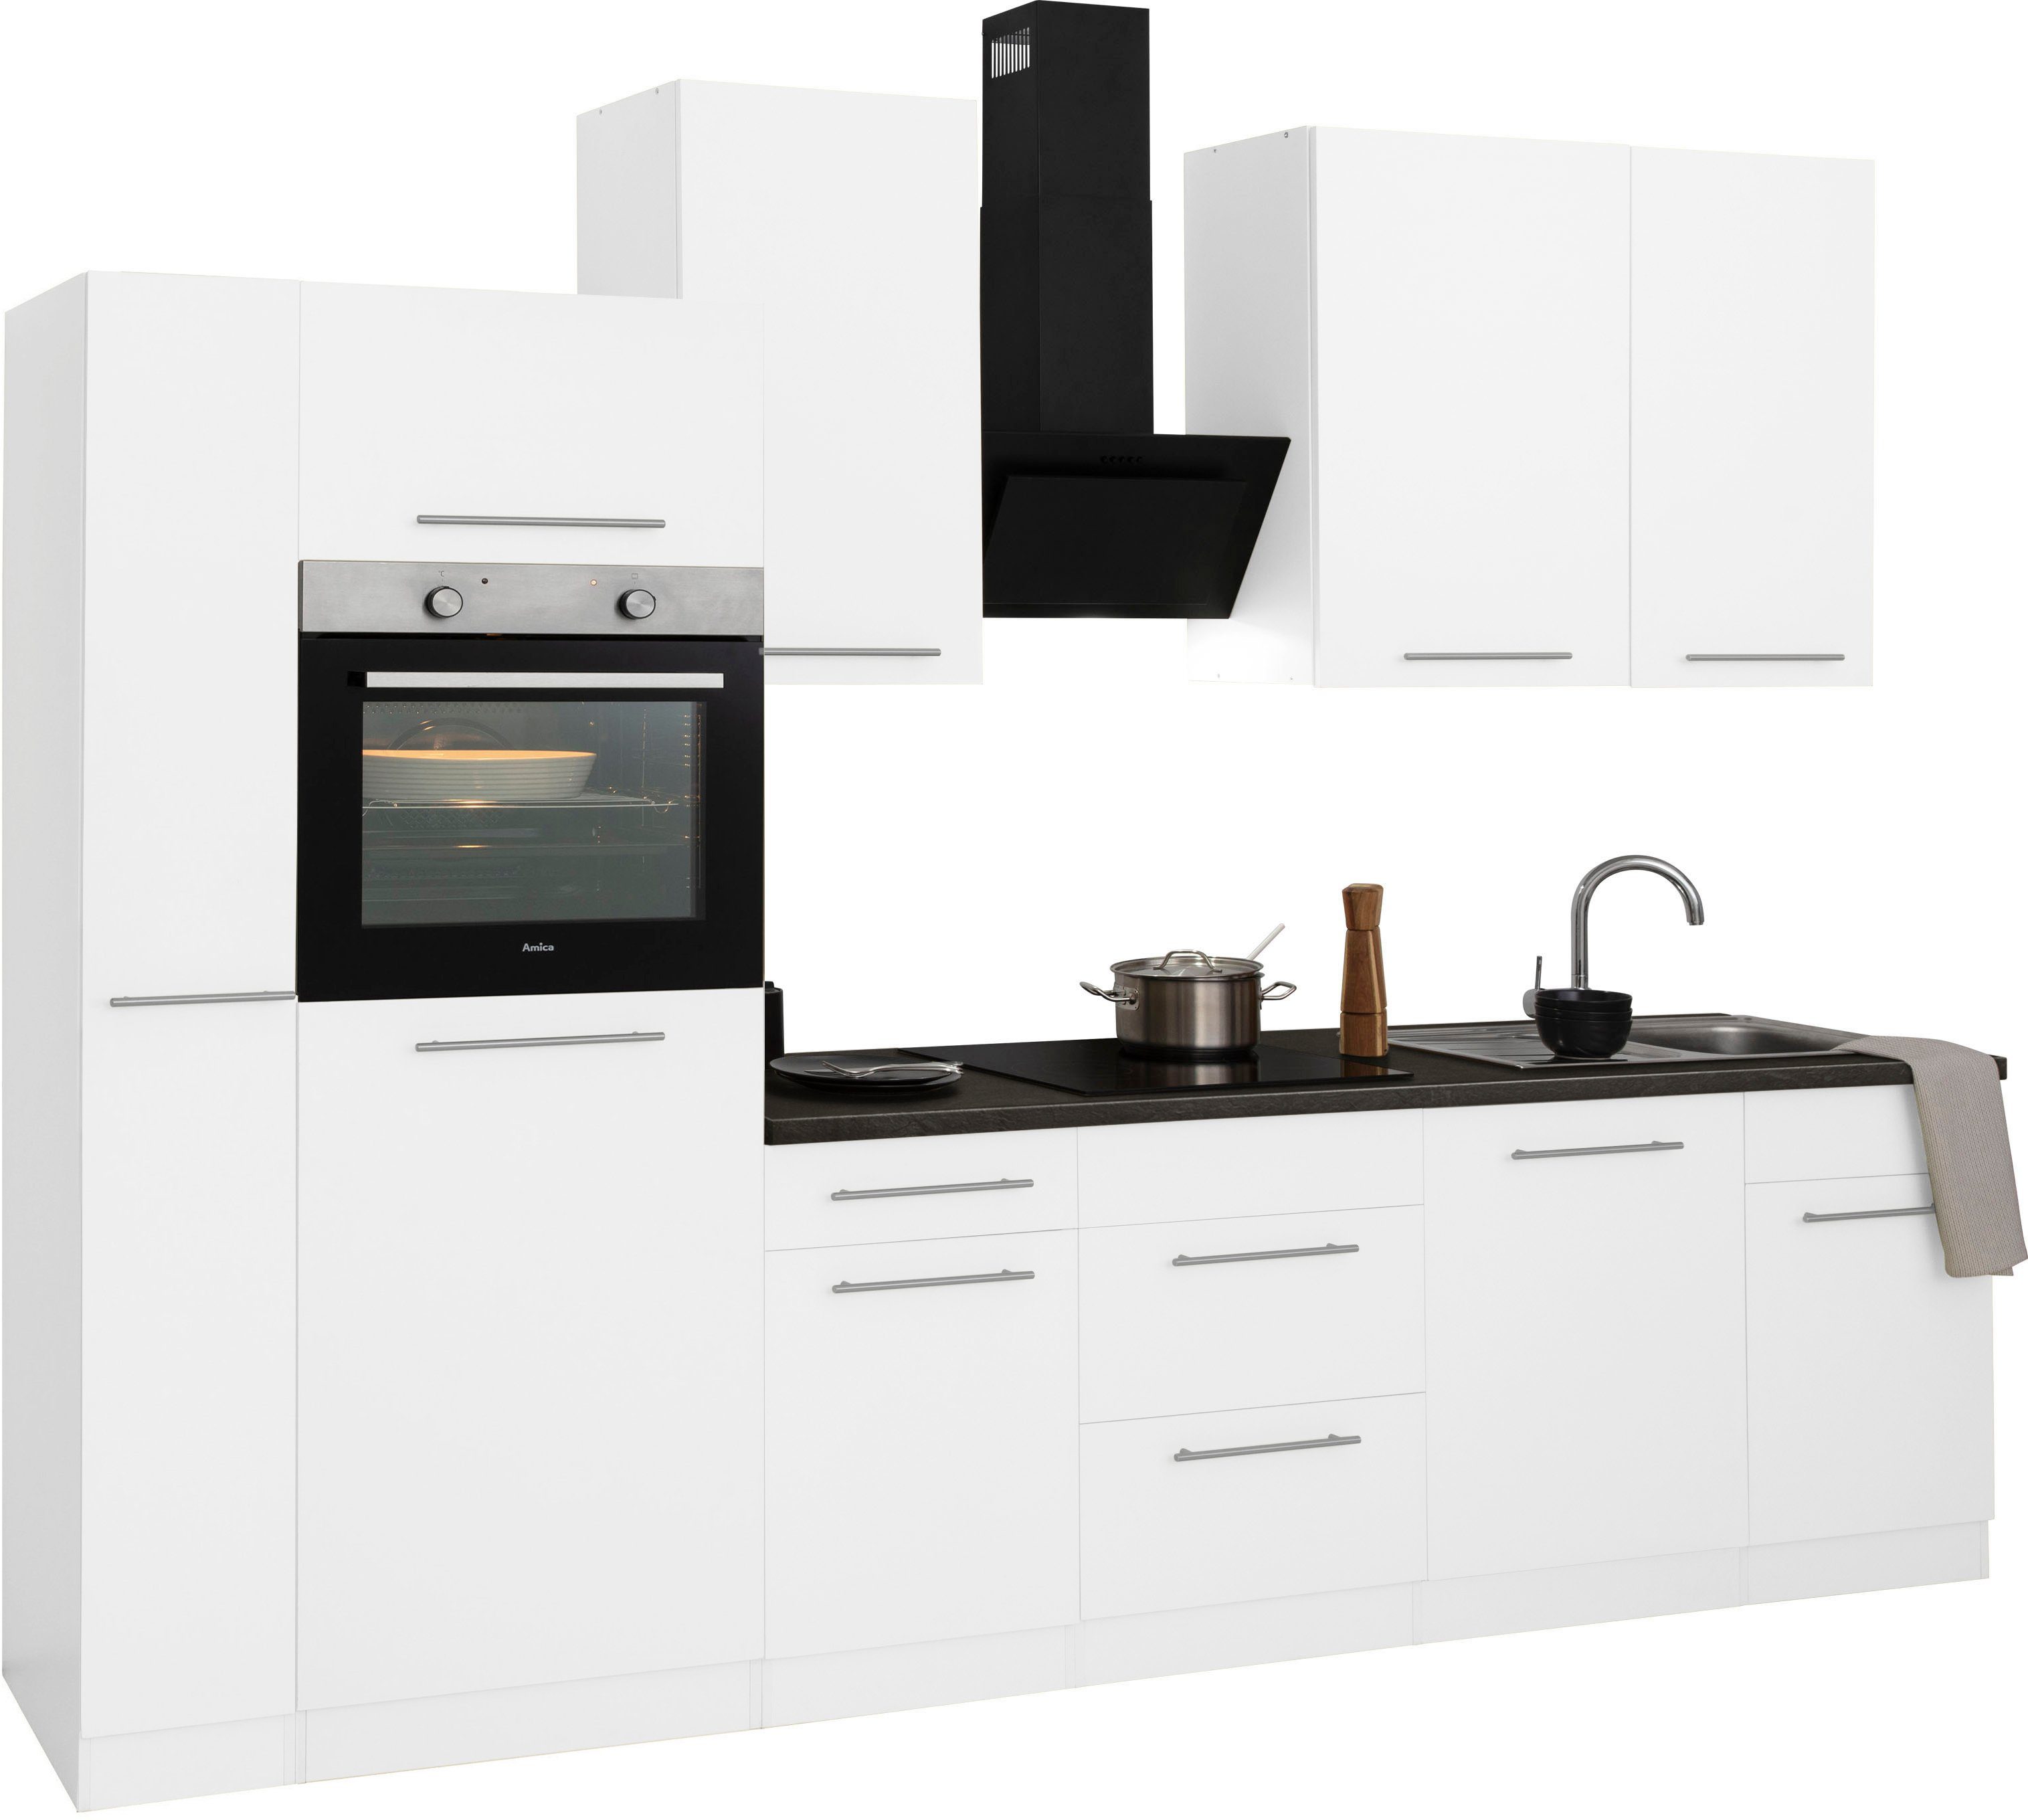 Aufbauservice Unna, Wahlweise wiho Breite E-Geräten, Küchenzeile 310 cm, mit Küchen mit